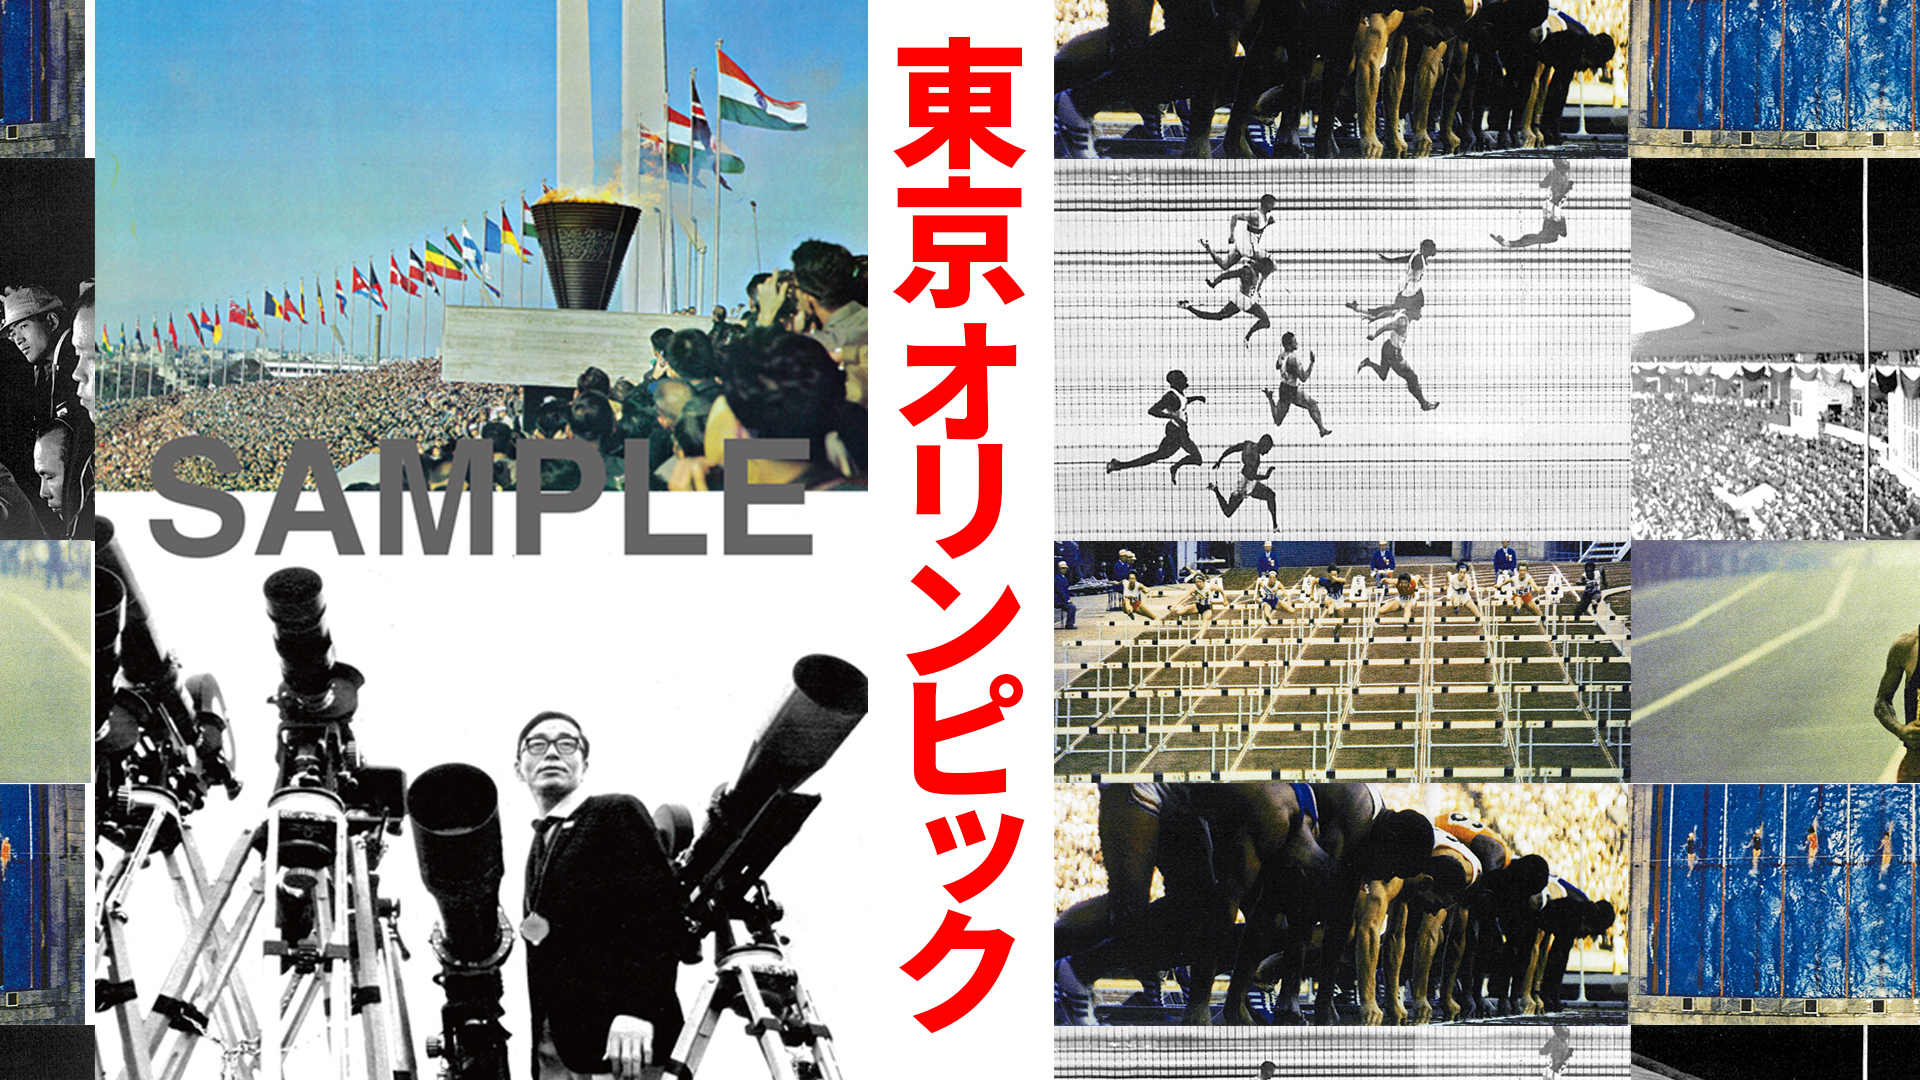 公式長編記録映画『東京オリンピック(1964)』 の特別書籍が復刊ドット